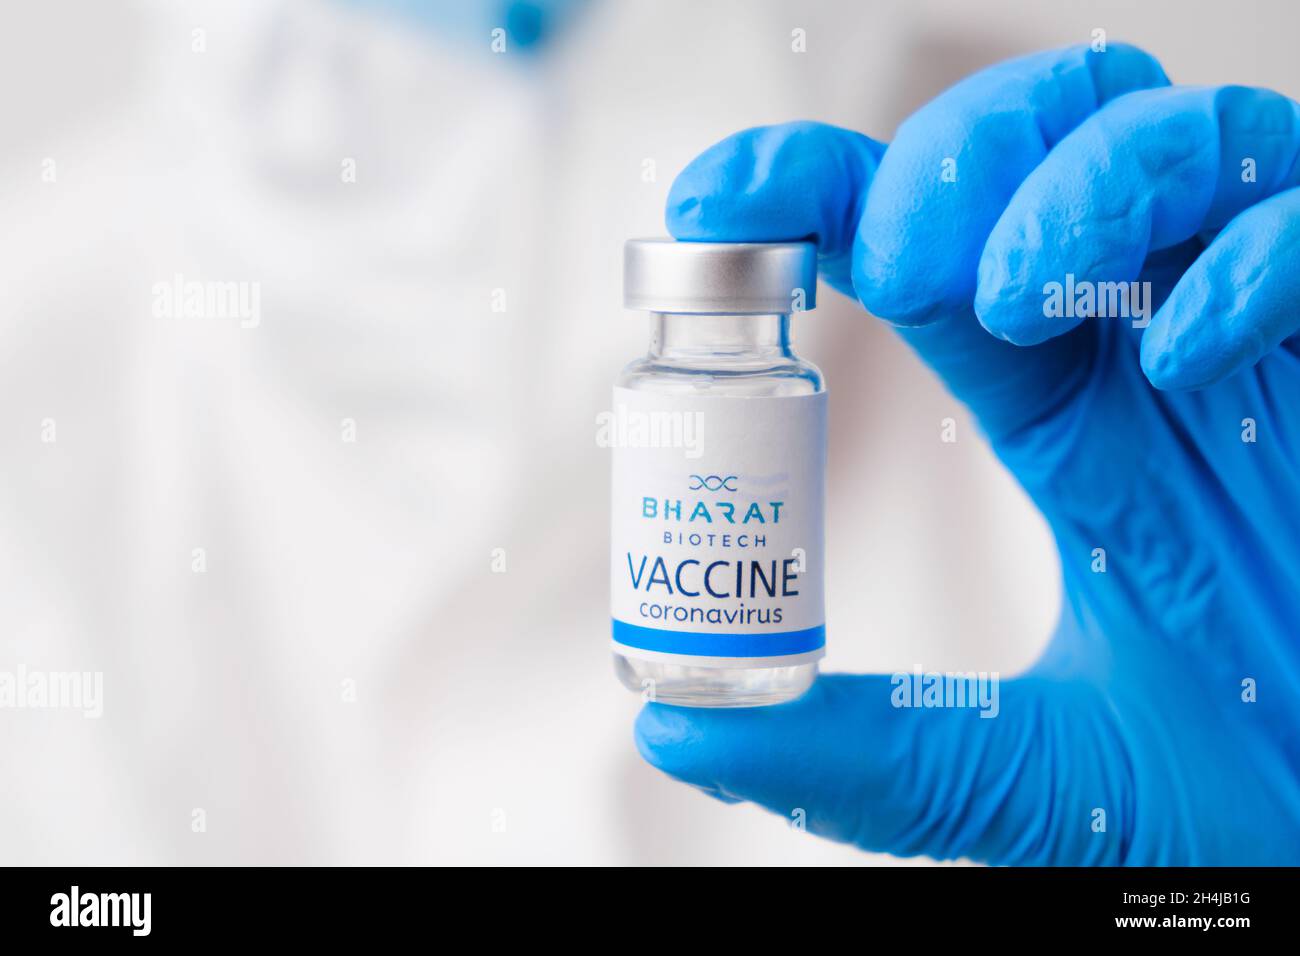 Vaccino Bhart contro SARS-Cov-2, coronavirus o Covid-19 messo sul tavolo da un operatore medico nei guanti di gomma, marzo 2021, San Francisco, USA Foto Stock